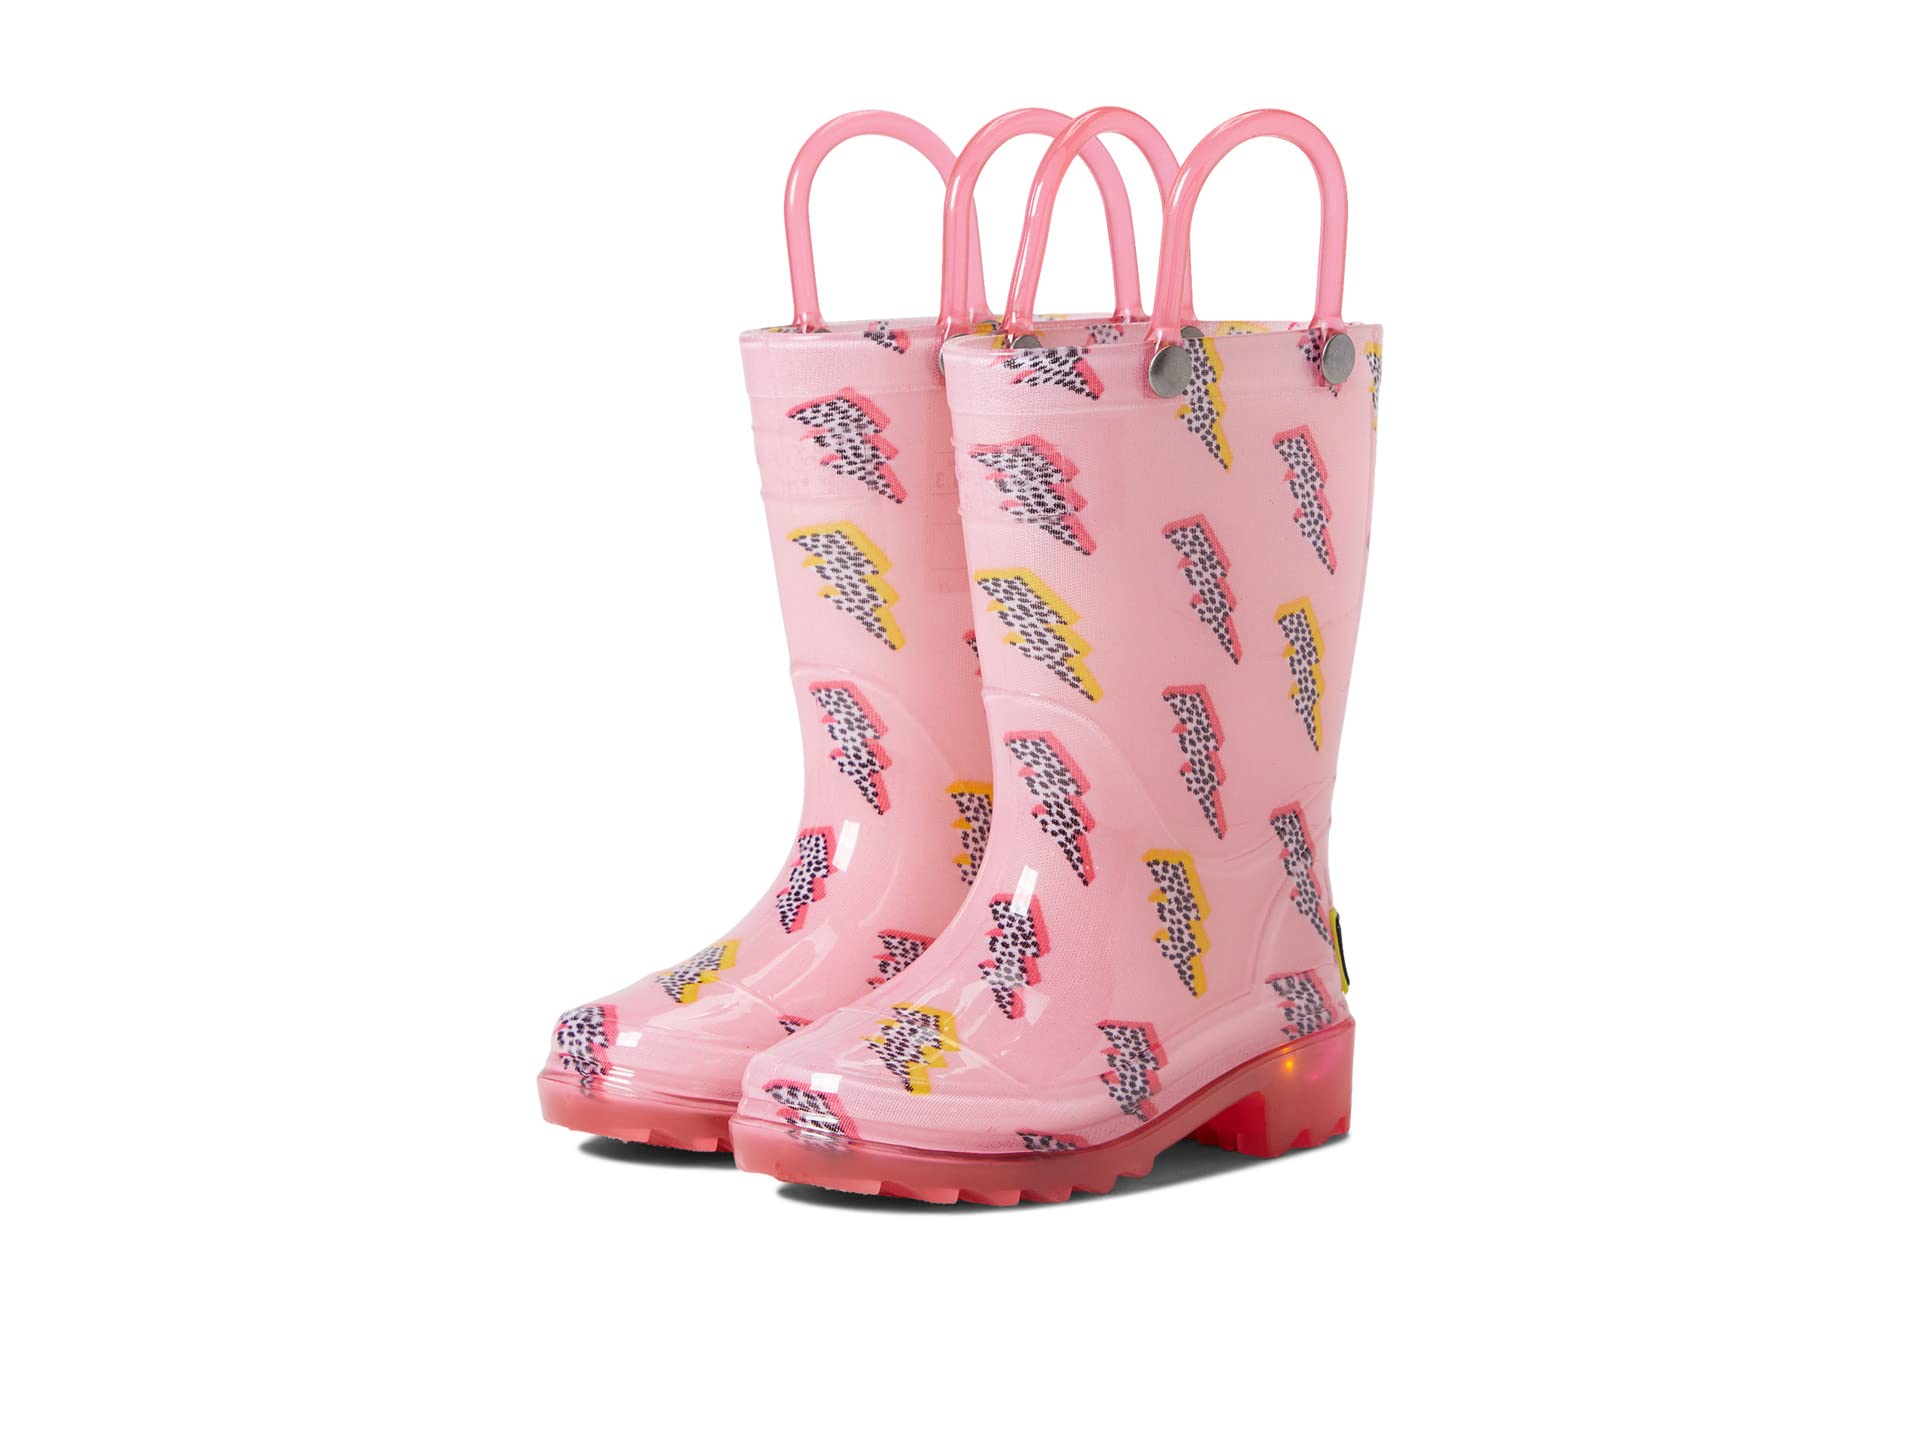 Ботинки от дождя из ПВХ с подсветкой Pink Lightning (для малышей/маленьких детей) Western Chief